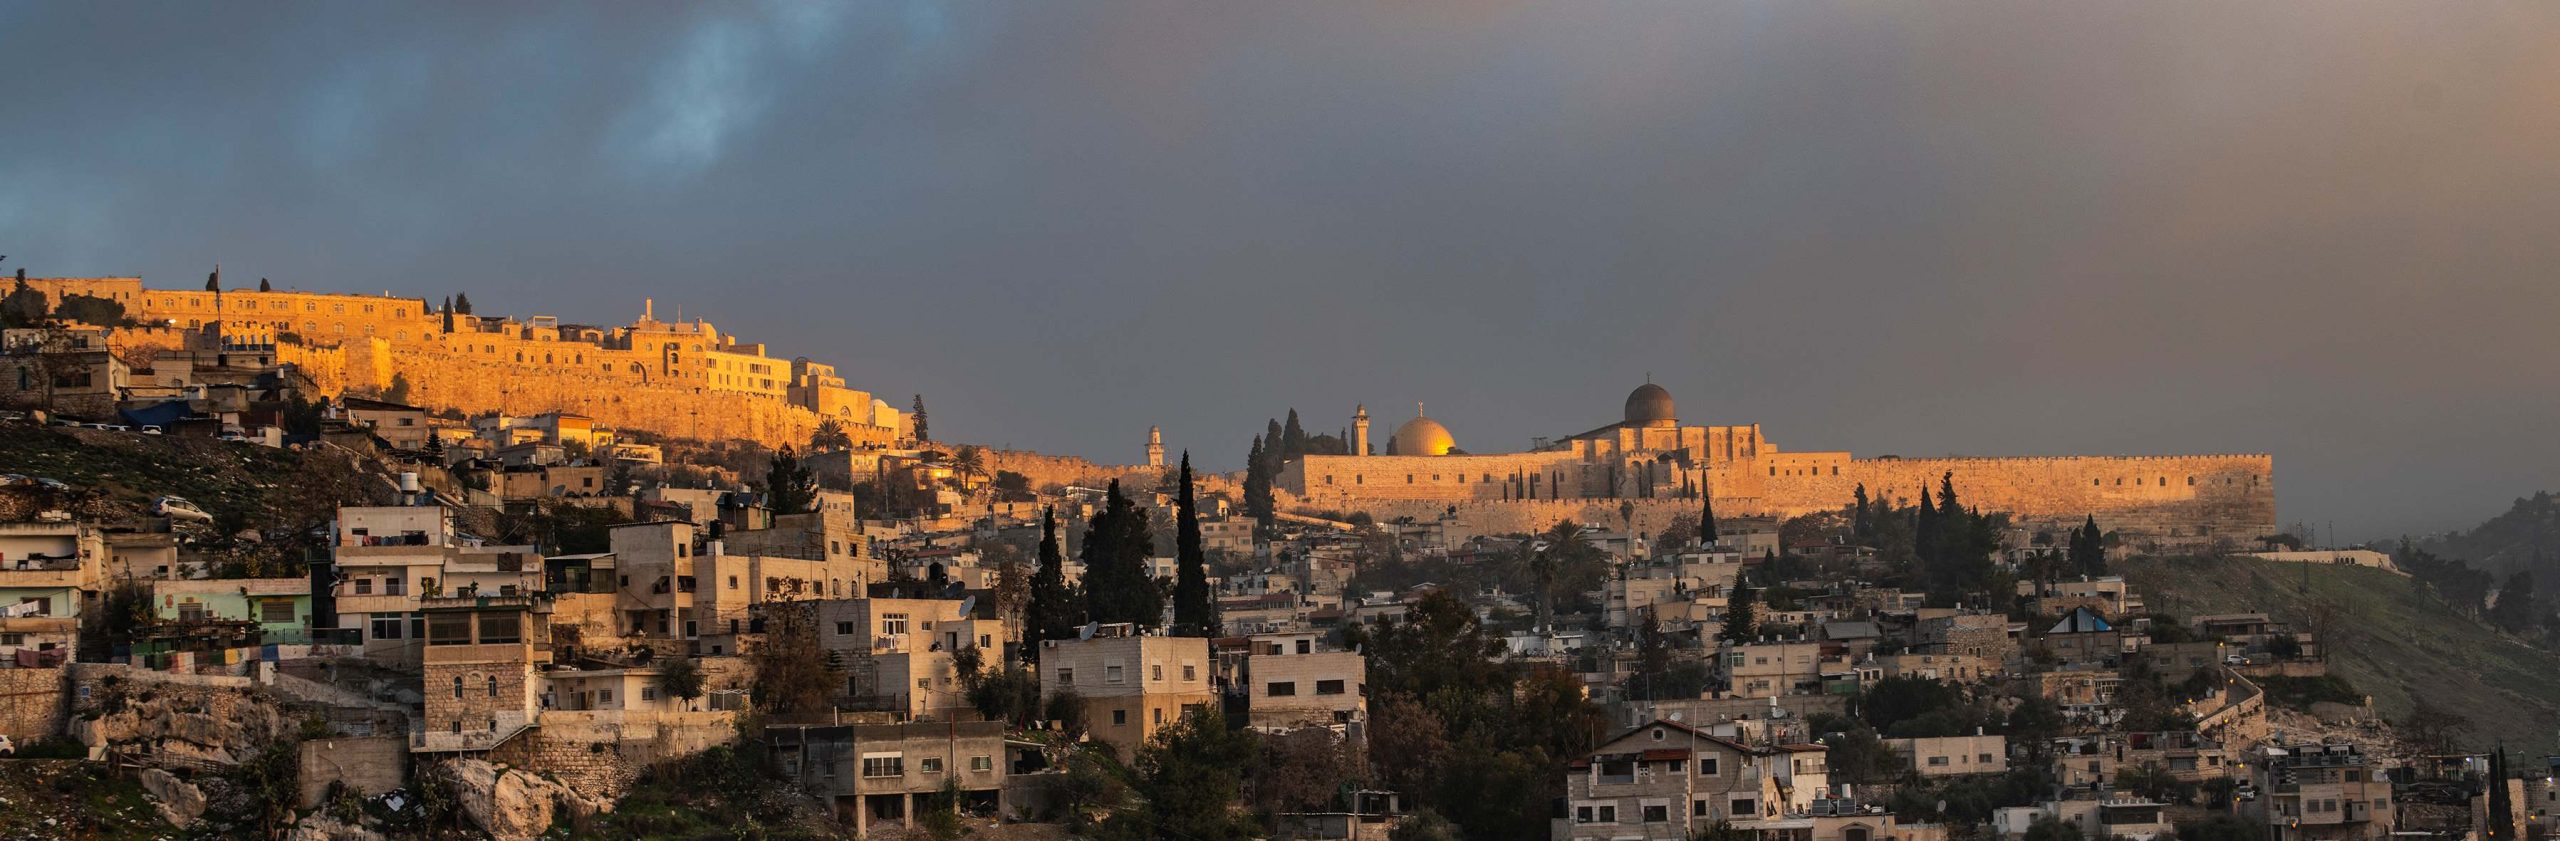 ירושלים. צילום: שי הלוי